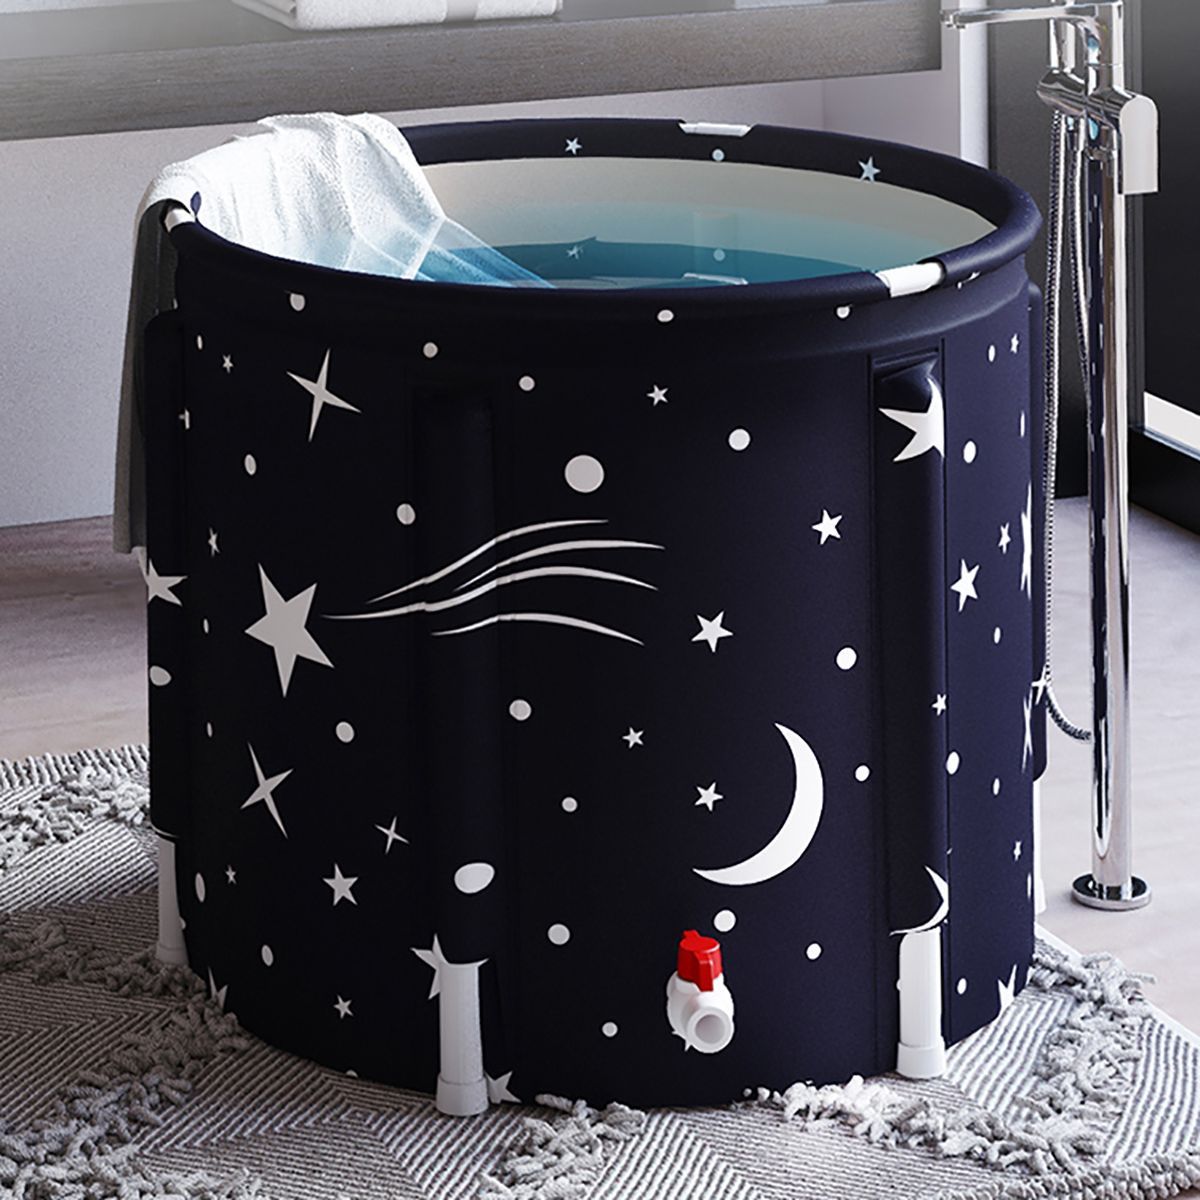 Portable-Bathtub-Foldable-Free-Standing-Soaking-Bath-Tub-Eco-Friendly-Bathtub-Bathroom-Spa-Tub-With--1724190